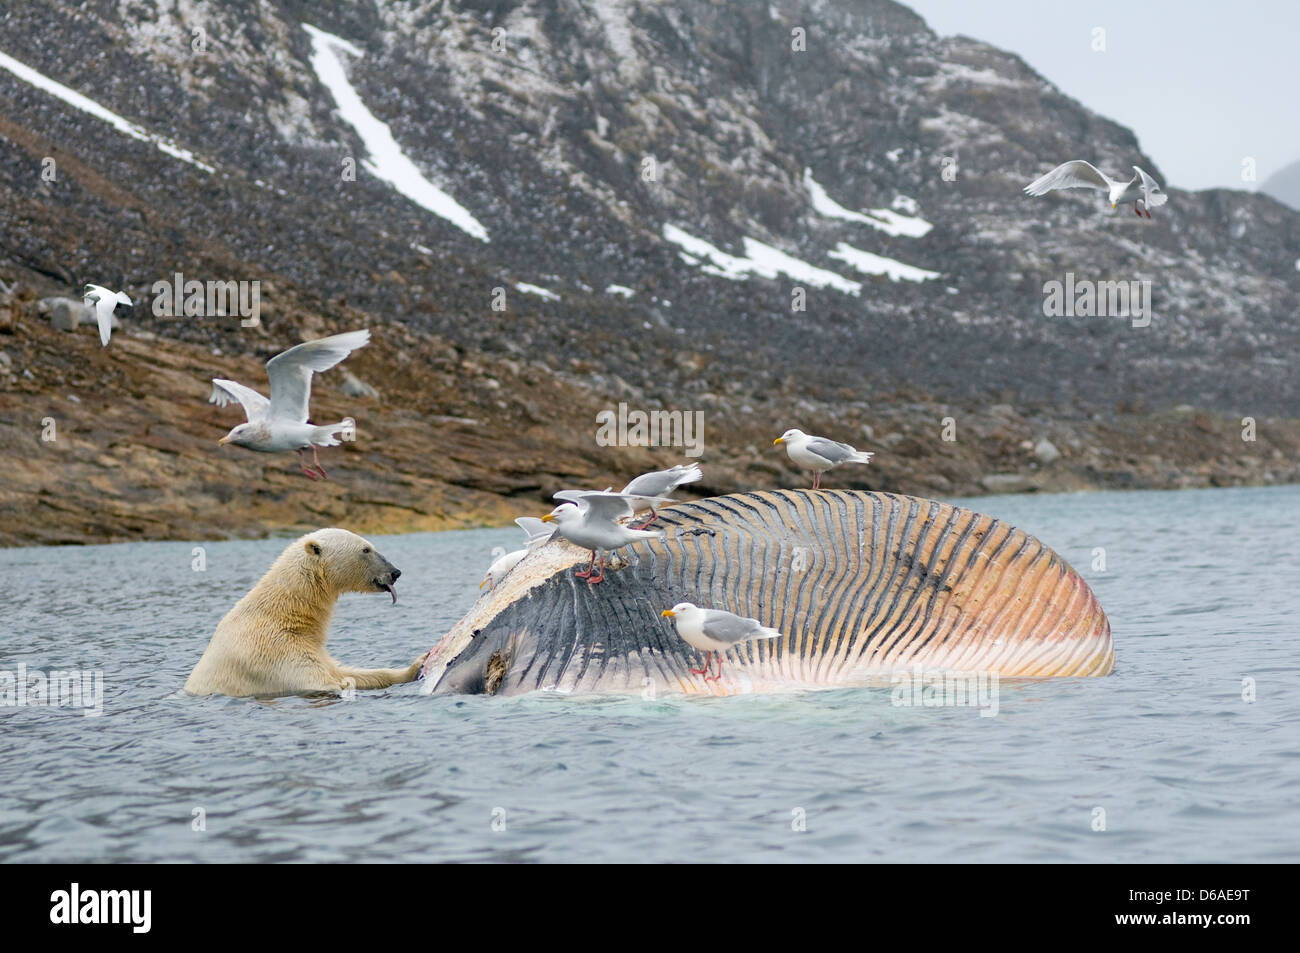 L'ours polaire Ursus maritimus groupe récupère la carcasse d'un baleine nageoire Balaenoptera Norvège Archipel Svalbard Spitzberg Banque D'Images